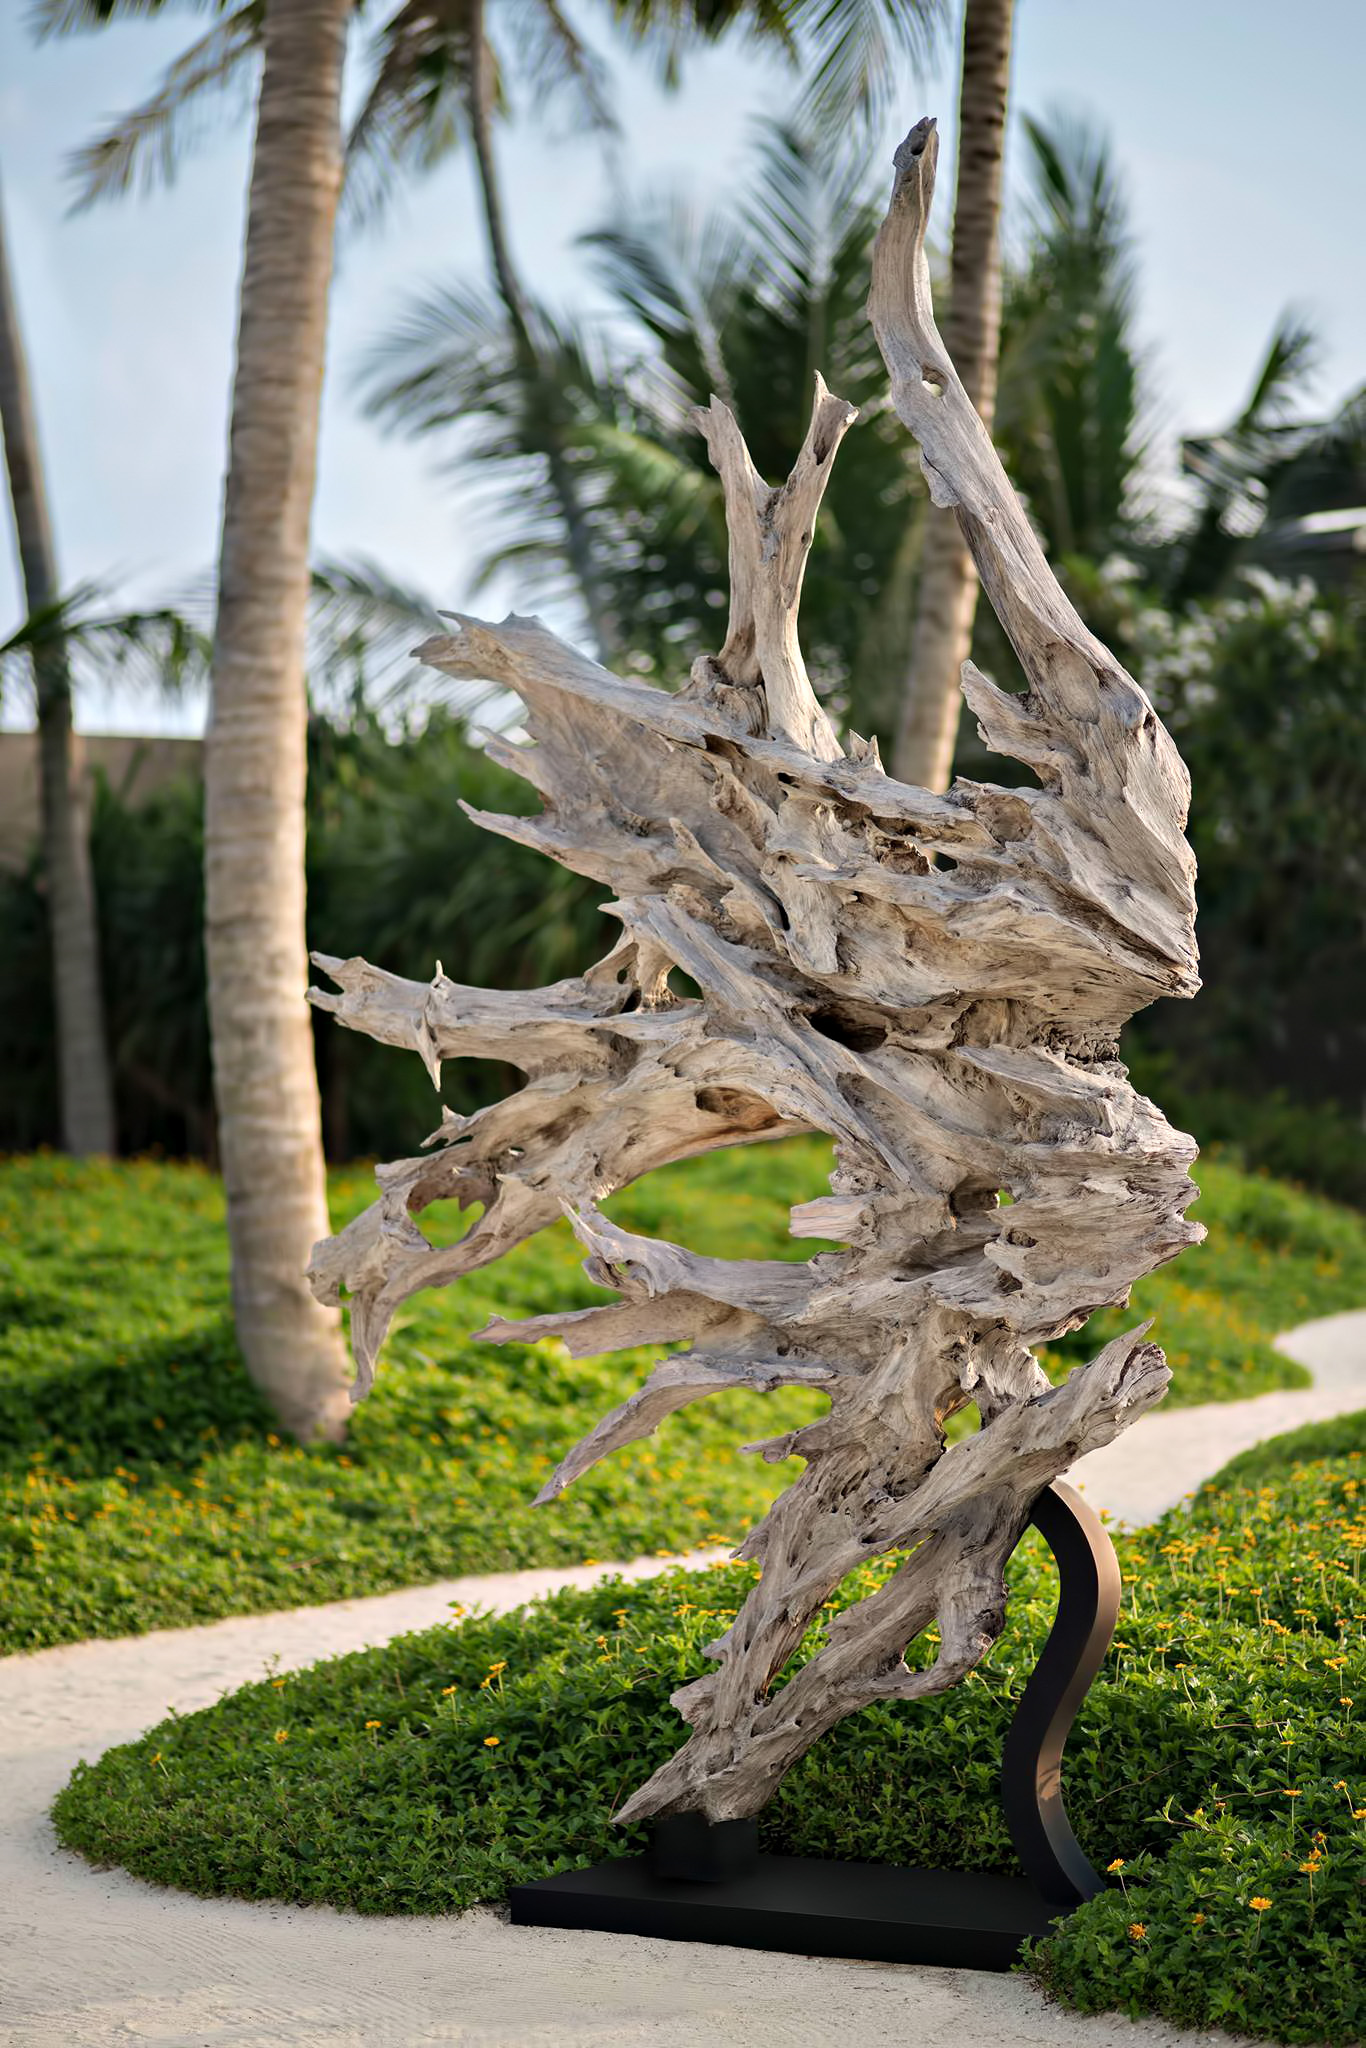 Cheval Blanc Randheli Resort – Noonu Atoll, Maldives – Natural Artistic Tropical Decor